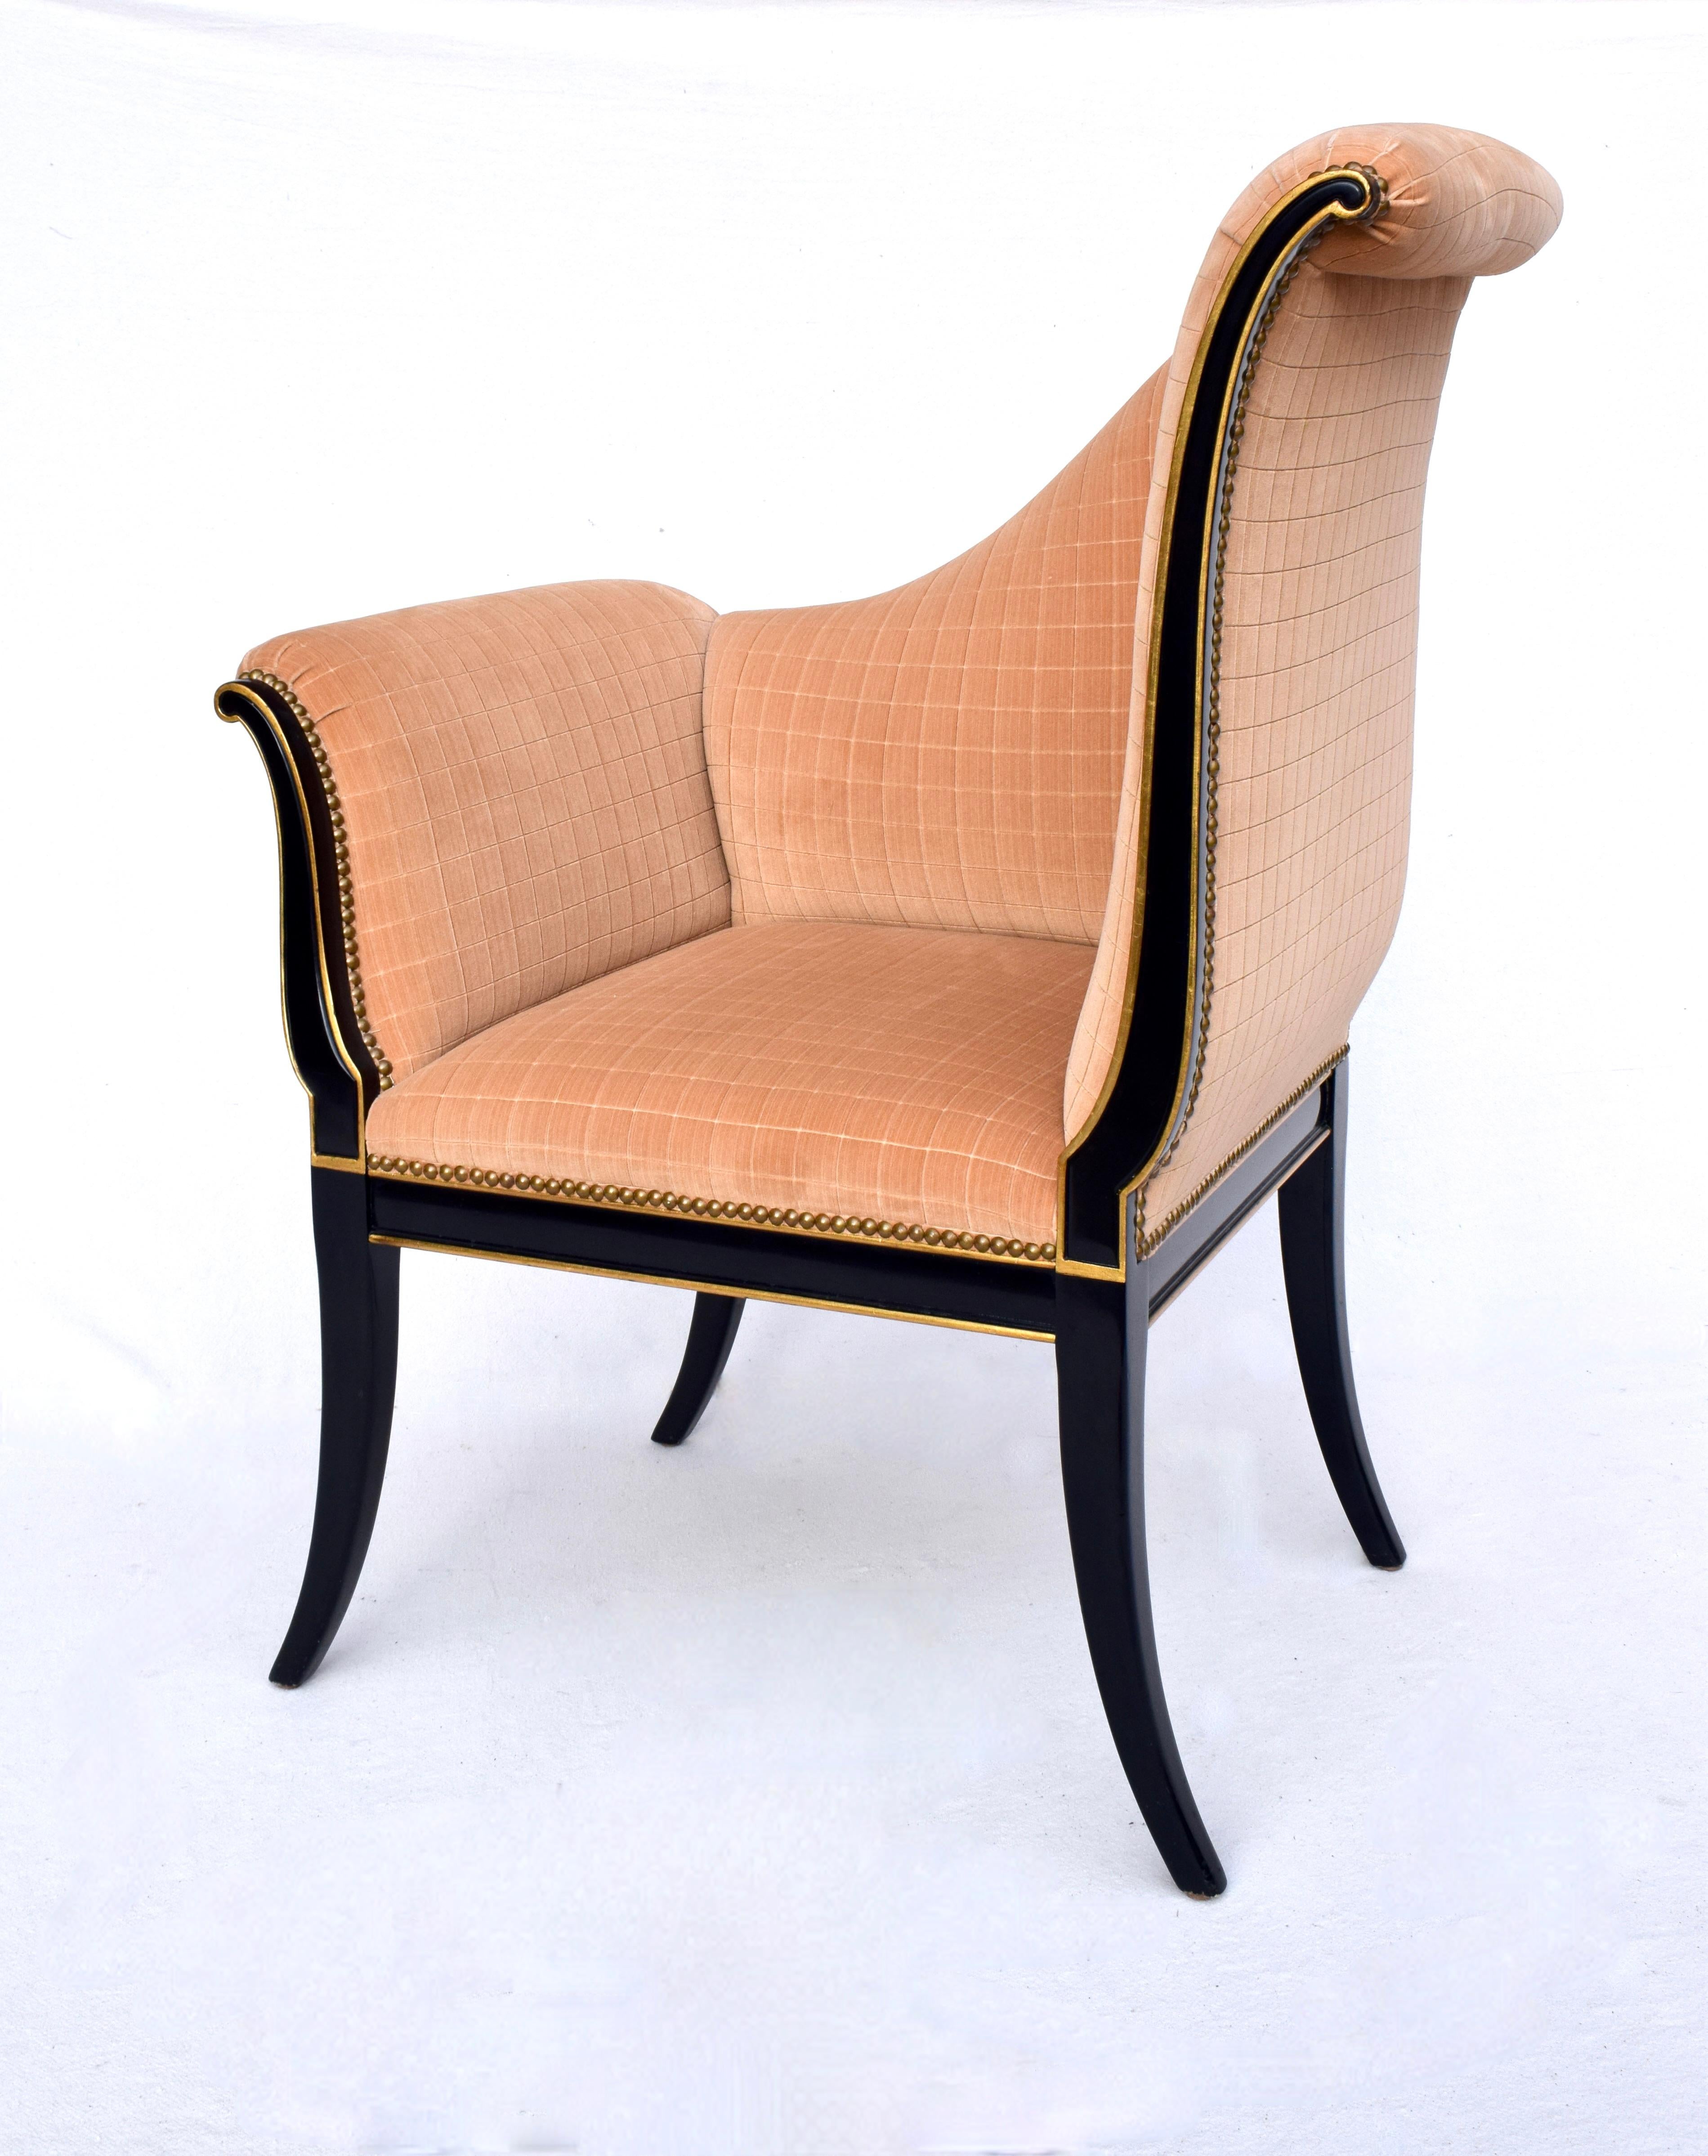 Karges Furniture Parler Deux Right & Left Regency Chairs For Sale 6